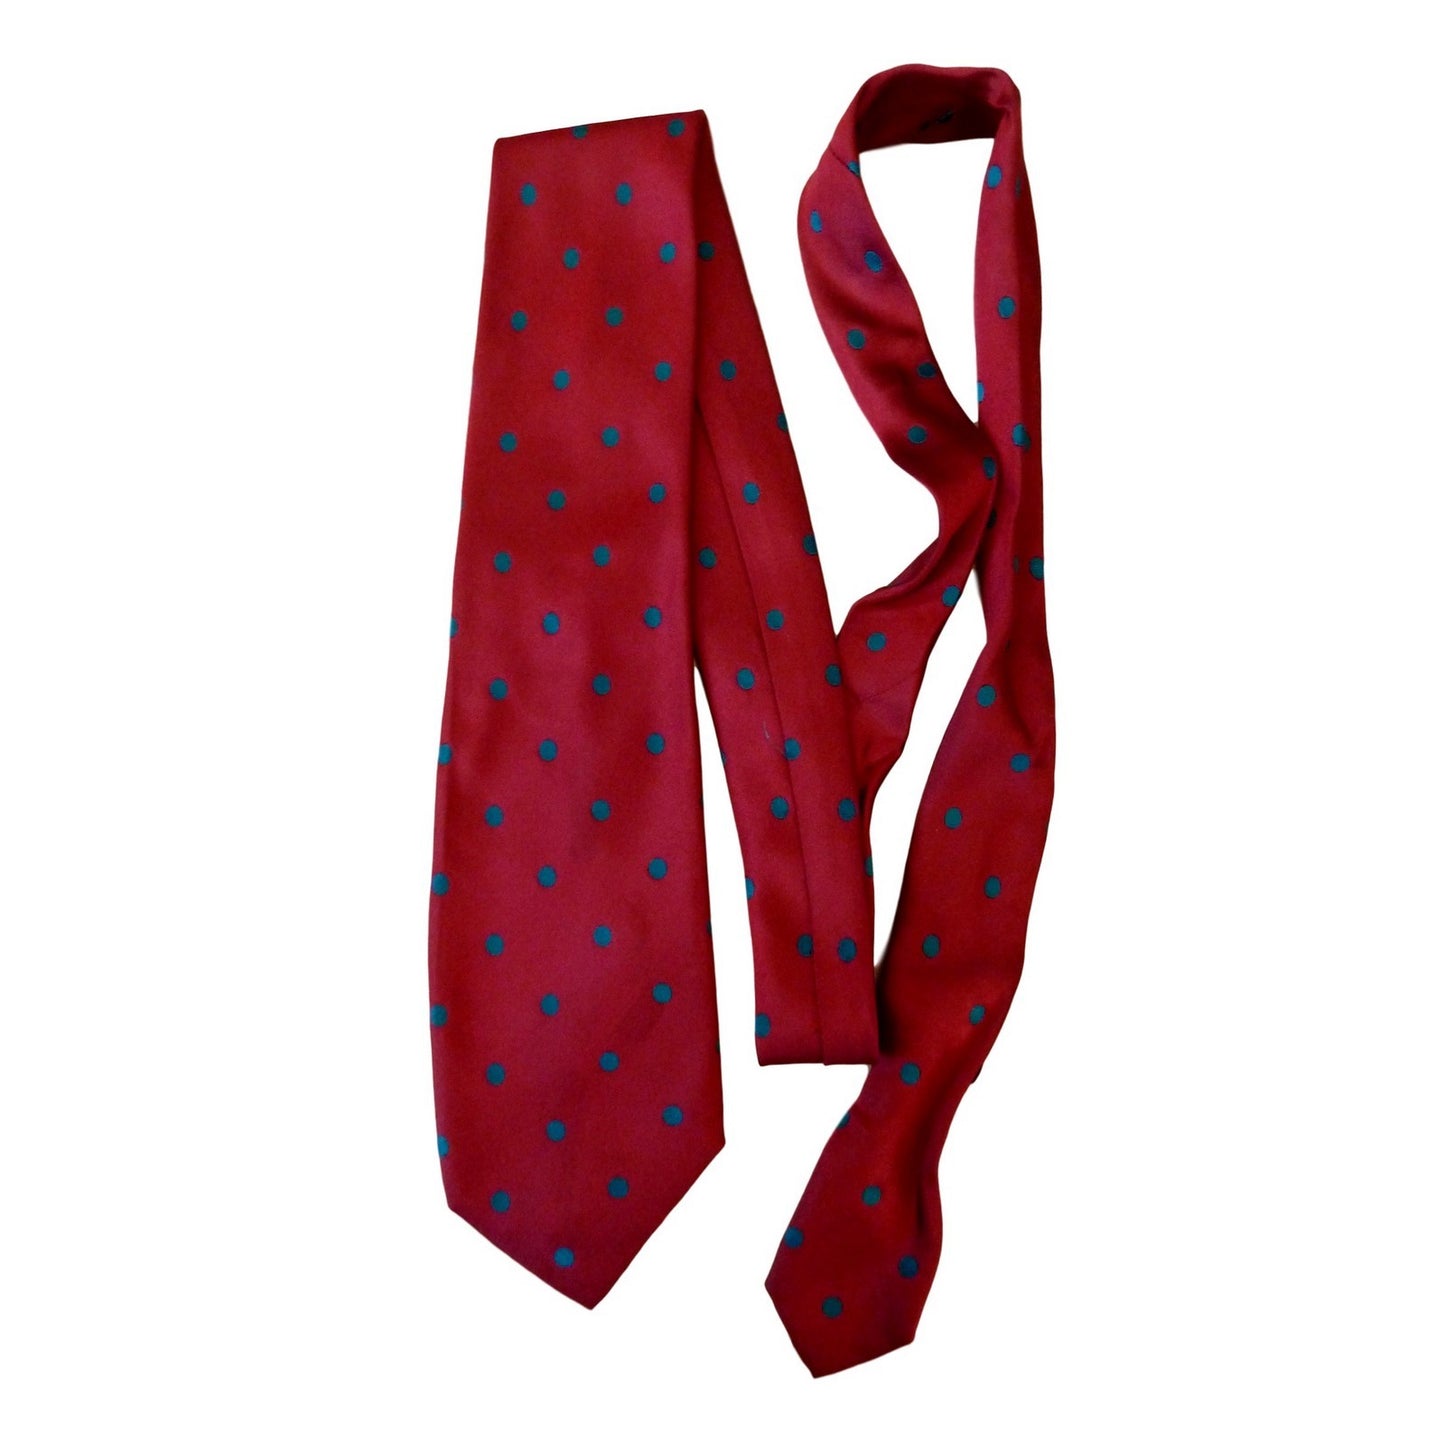 Kenzo Cravatta Seta Vintage Rossa A Pois